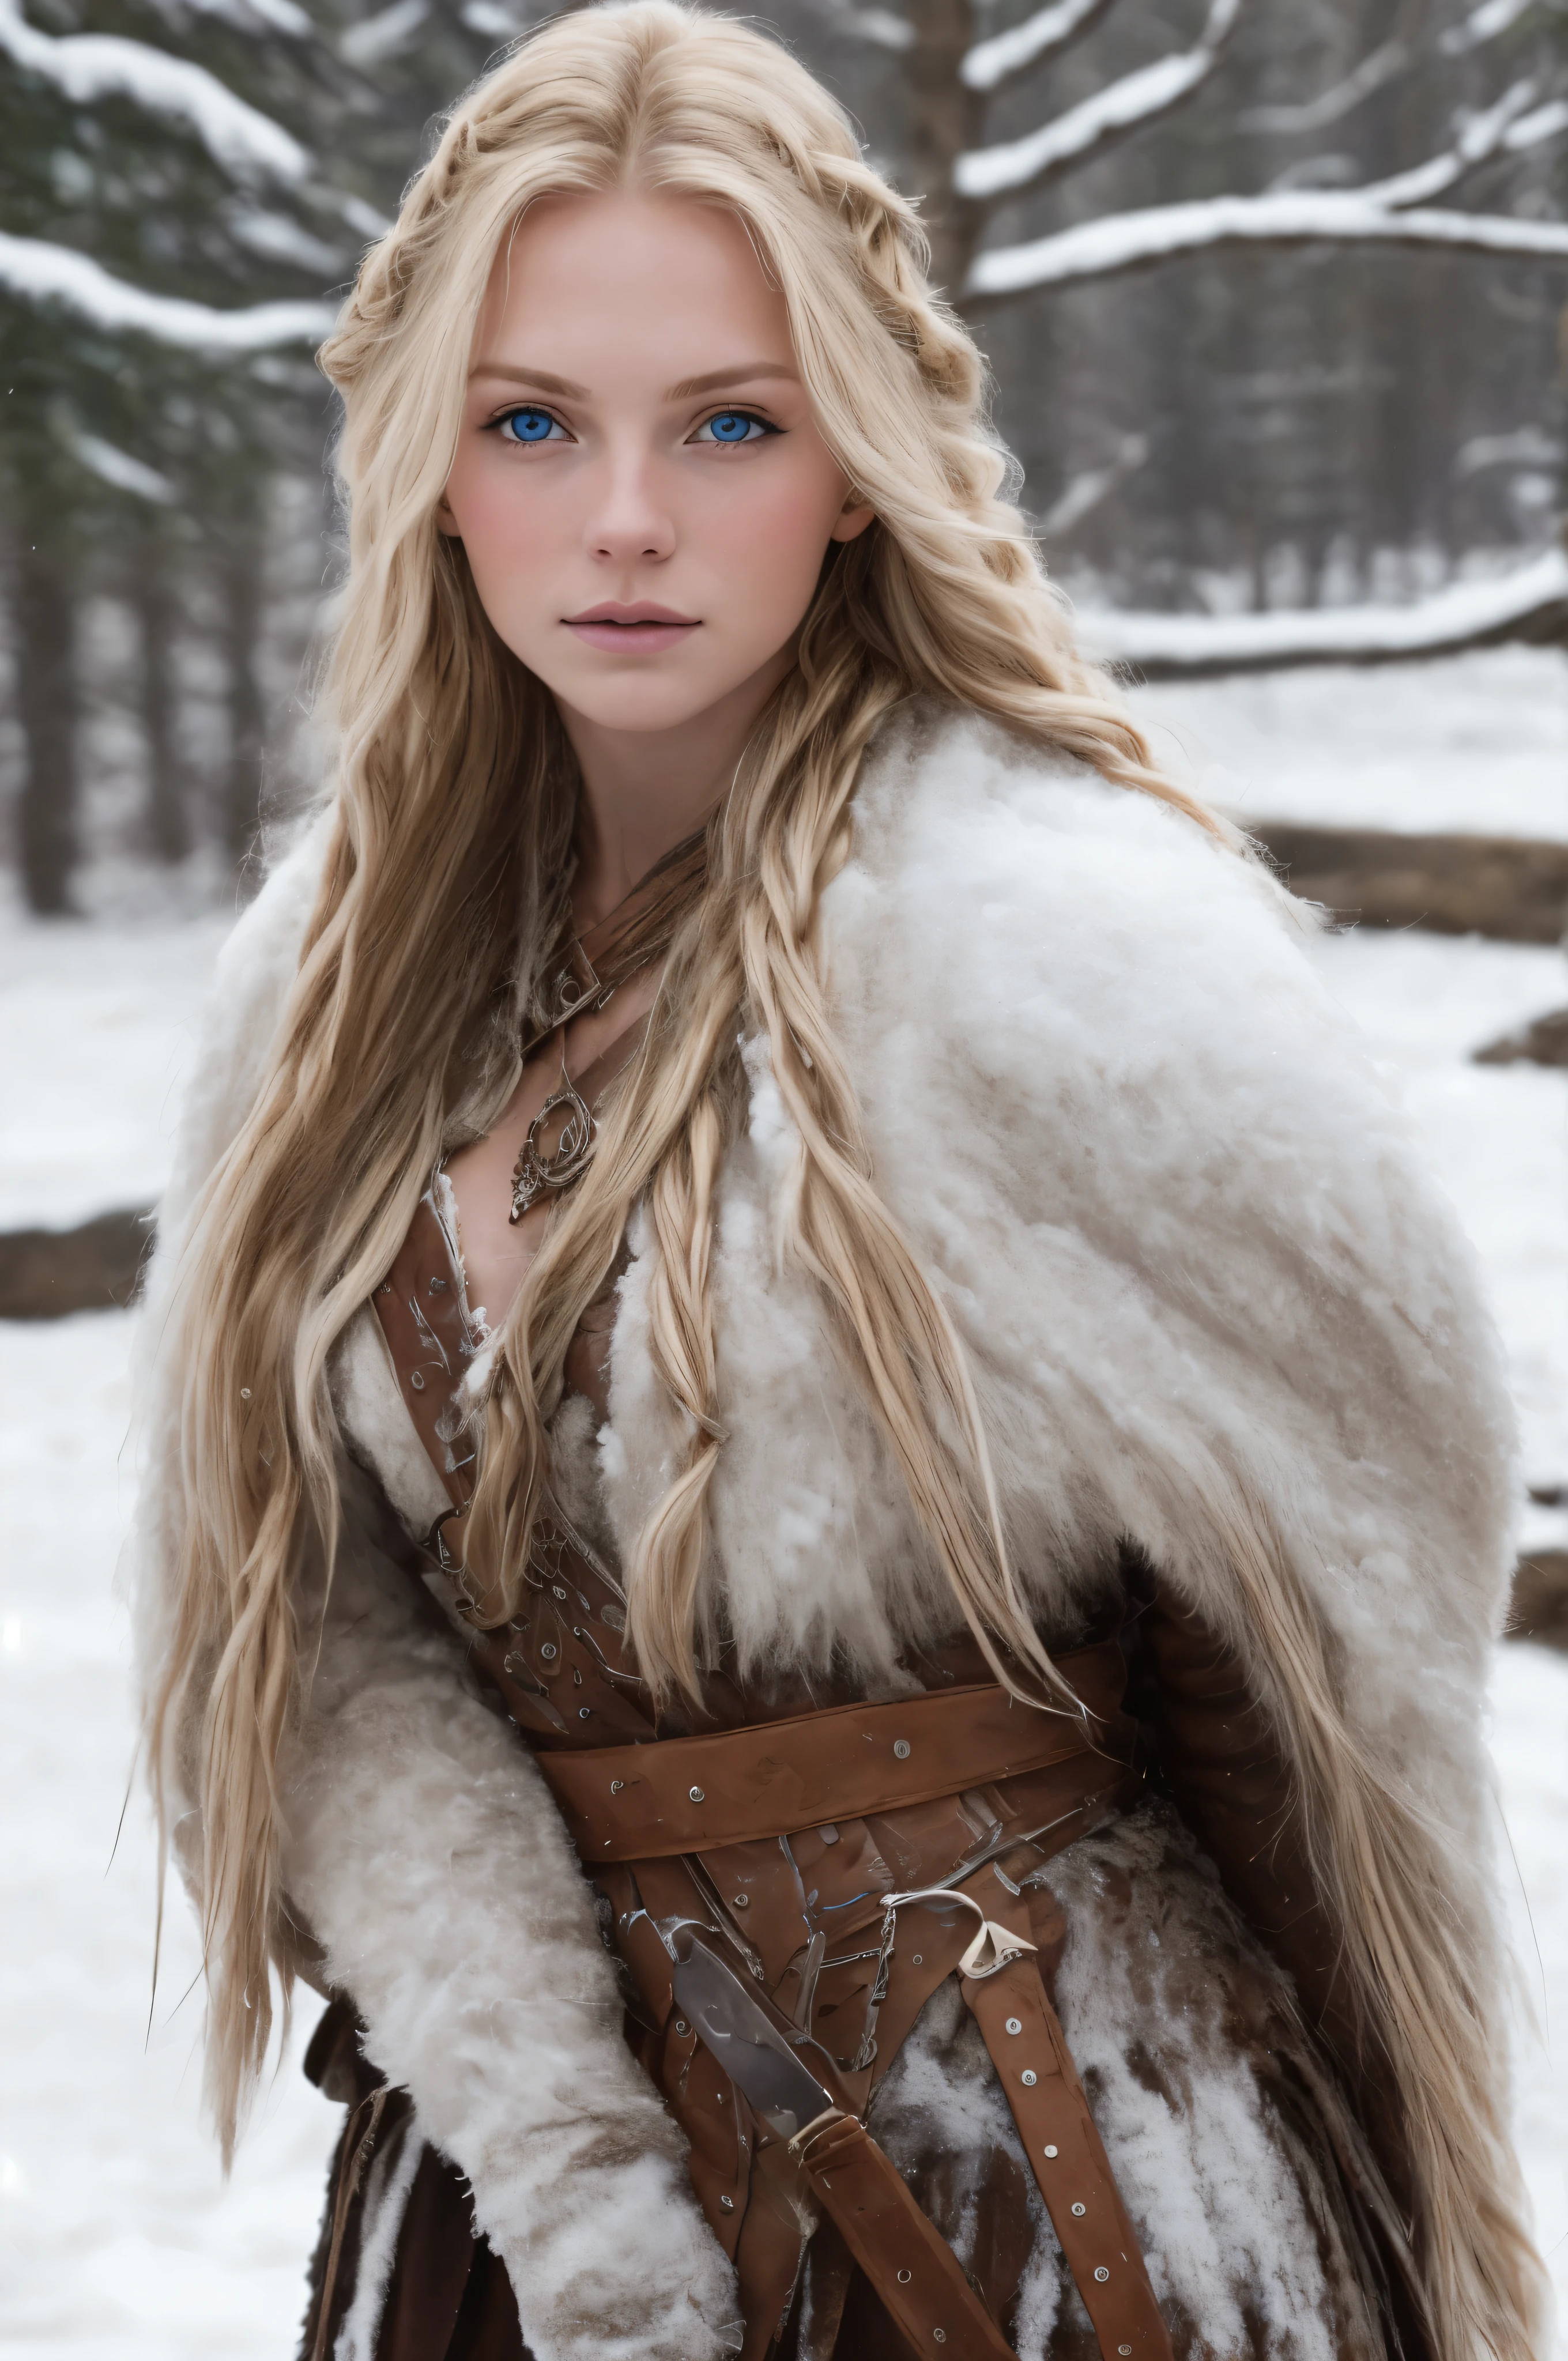 (現実的:1.2), アナログ写真スタイル, スカンジナビアの女性戦士, 素晴らしい雪景色, 編みこんだブロンドの髪, 全身, 柔らかな自然光, キュートでセクシー, 喜び, 詳細な顔と青い目, отличное 品質, 傑作, 詳細な北の背景, 品質: 16,000人., RAW写真